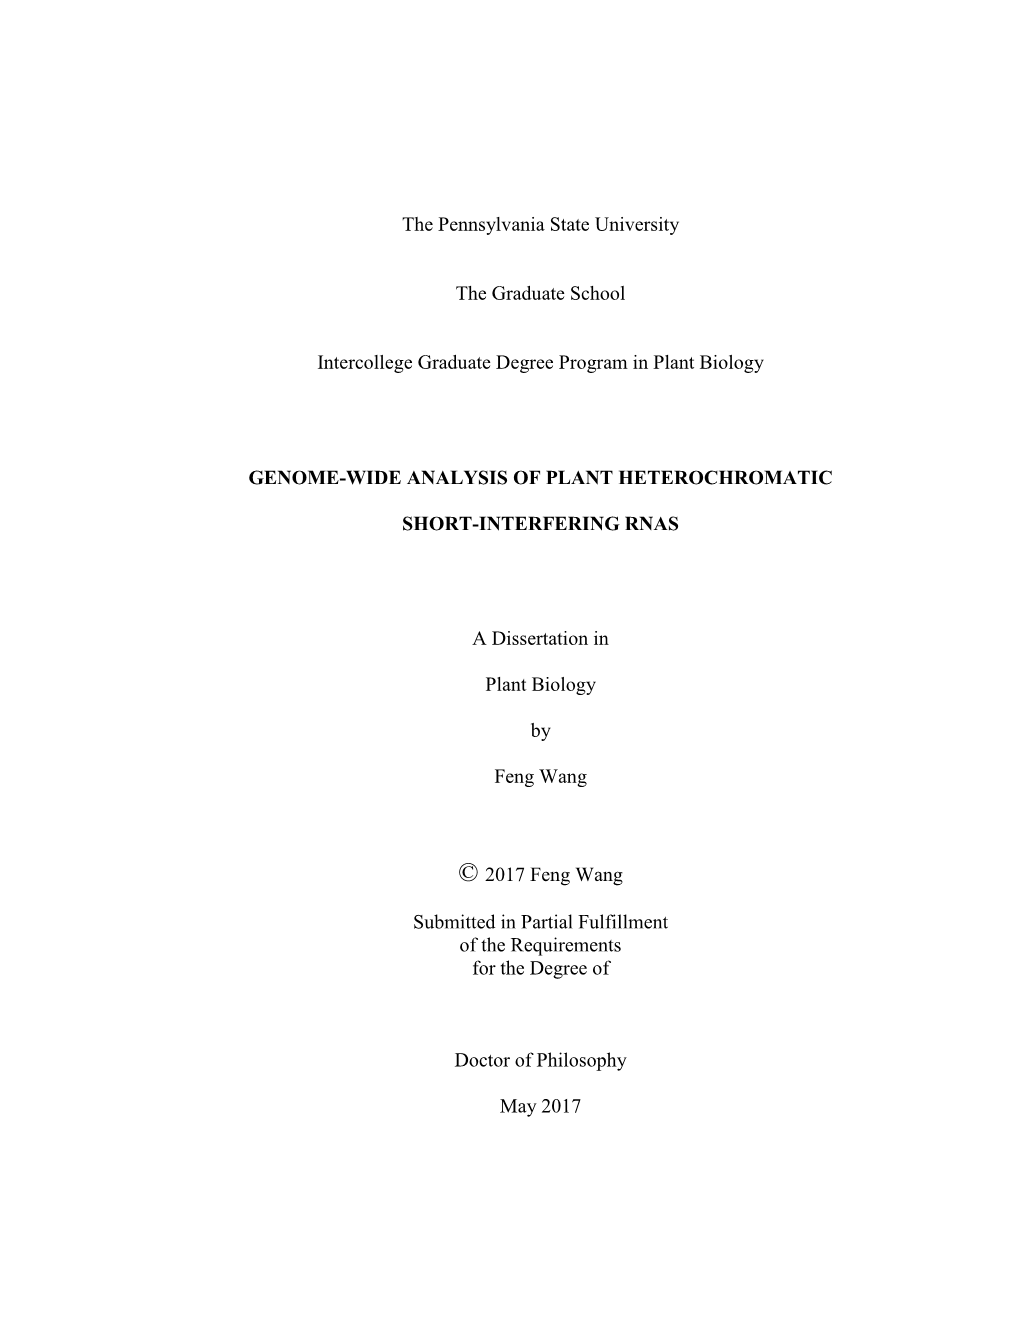 Open Feng Wang Dissertation.Pdf